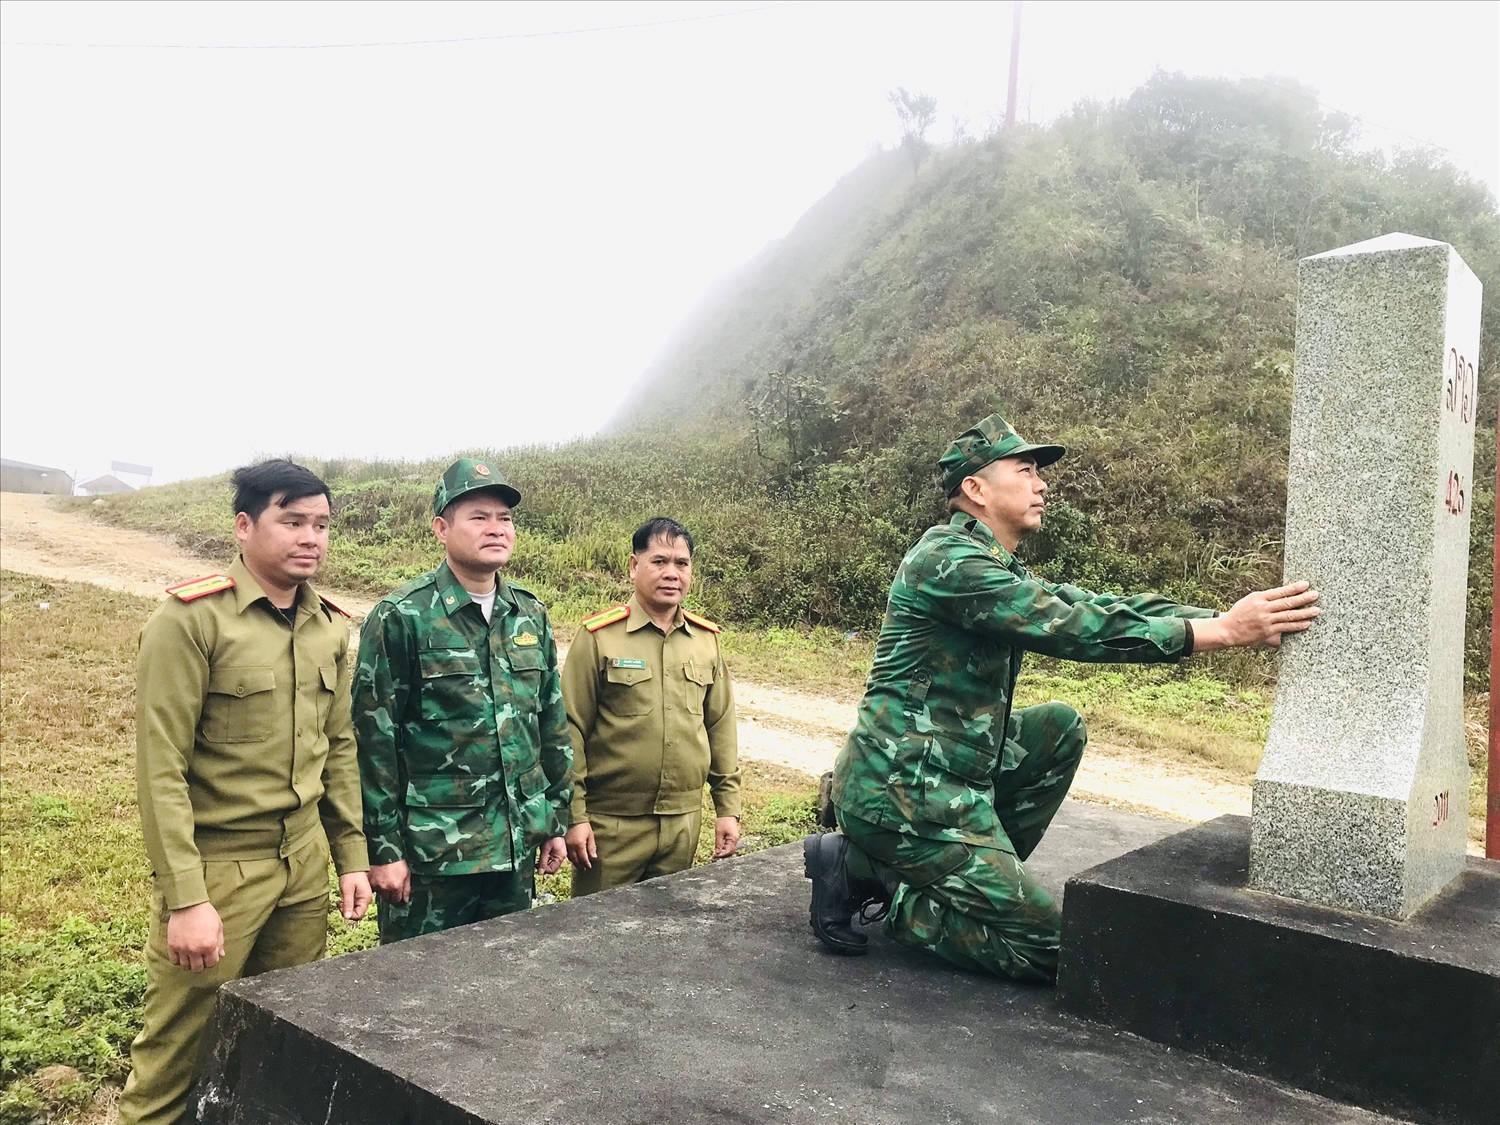 Cán bộ, chiến sĩ Trạm kiểm soát Cửa khẩu, Đồn biên phòng Tam Hợp và Đồn Công an Cửa khẩu Thoong Mi Xay (Lào) thường xuyên phối hợp xây dựng cửa khẩu hòa bình, hữu nghị.